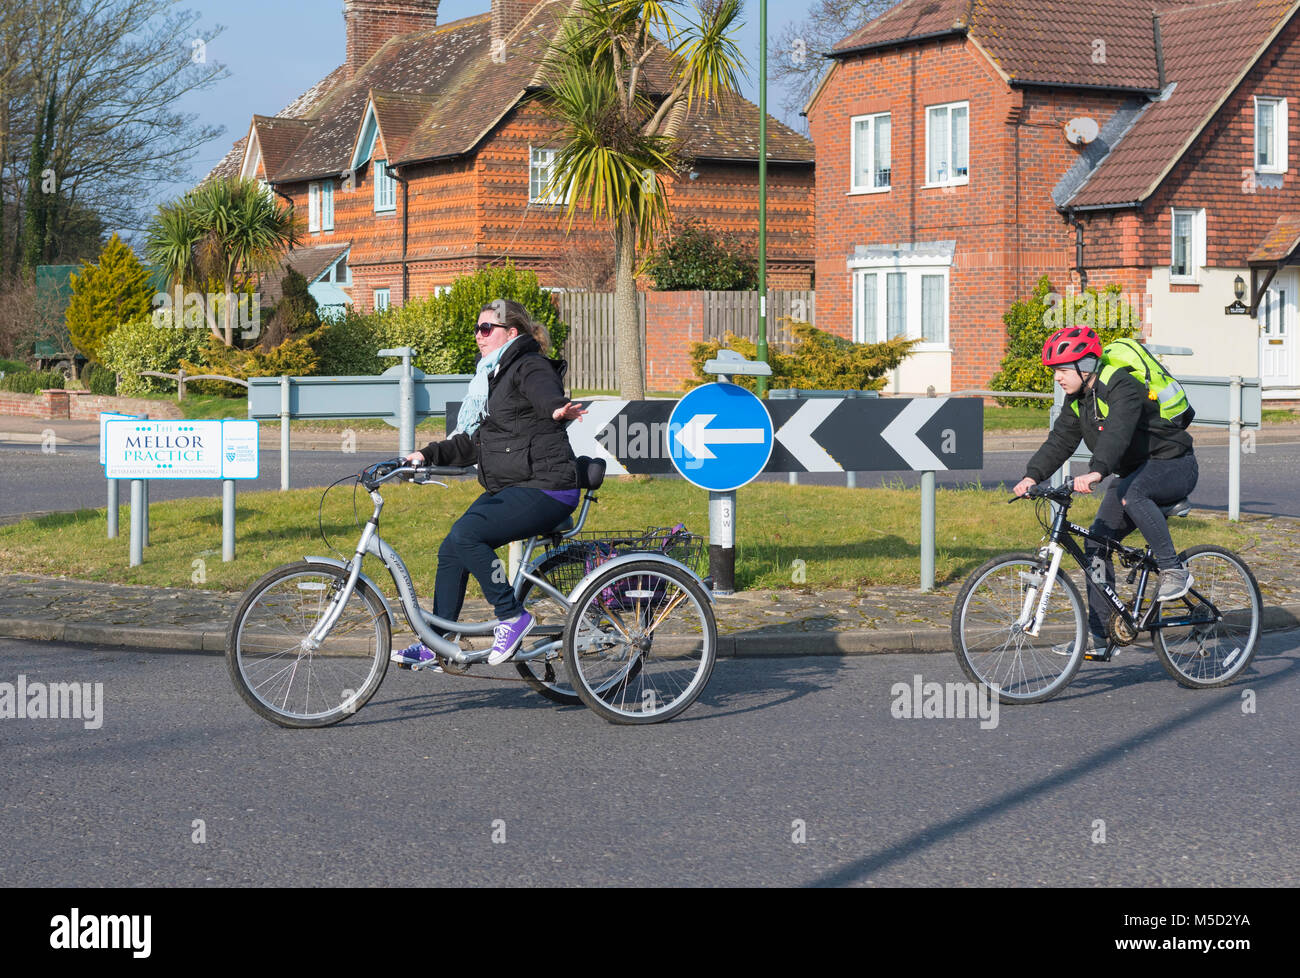 Donna in bicicletta su un triciclo a pedali bike con 3 ruote, attorno ad una piccola rotonda in Inghilterra, Regno Unito. Foto Stock